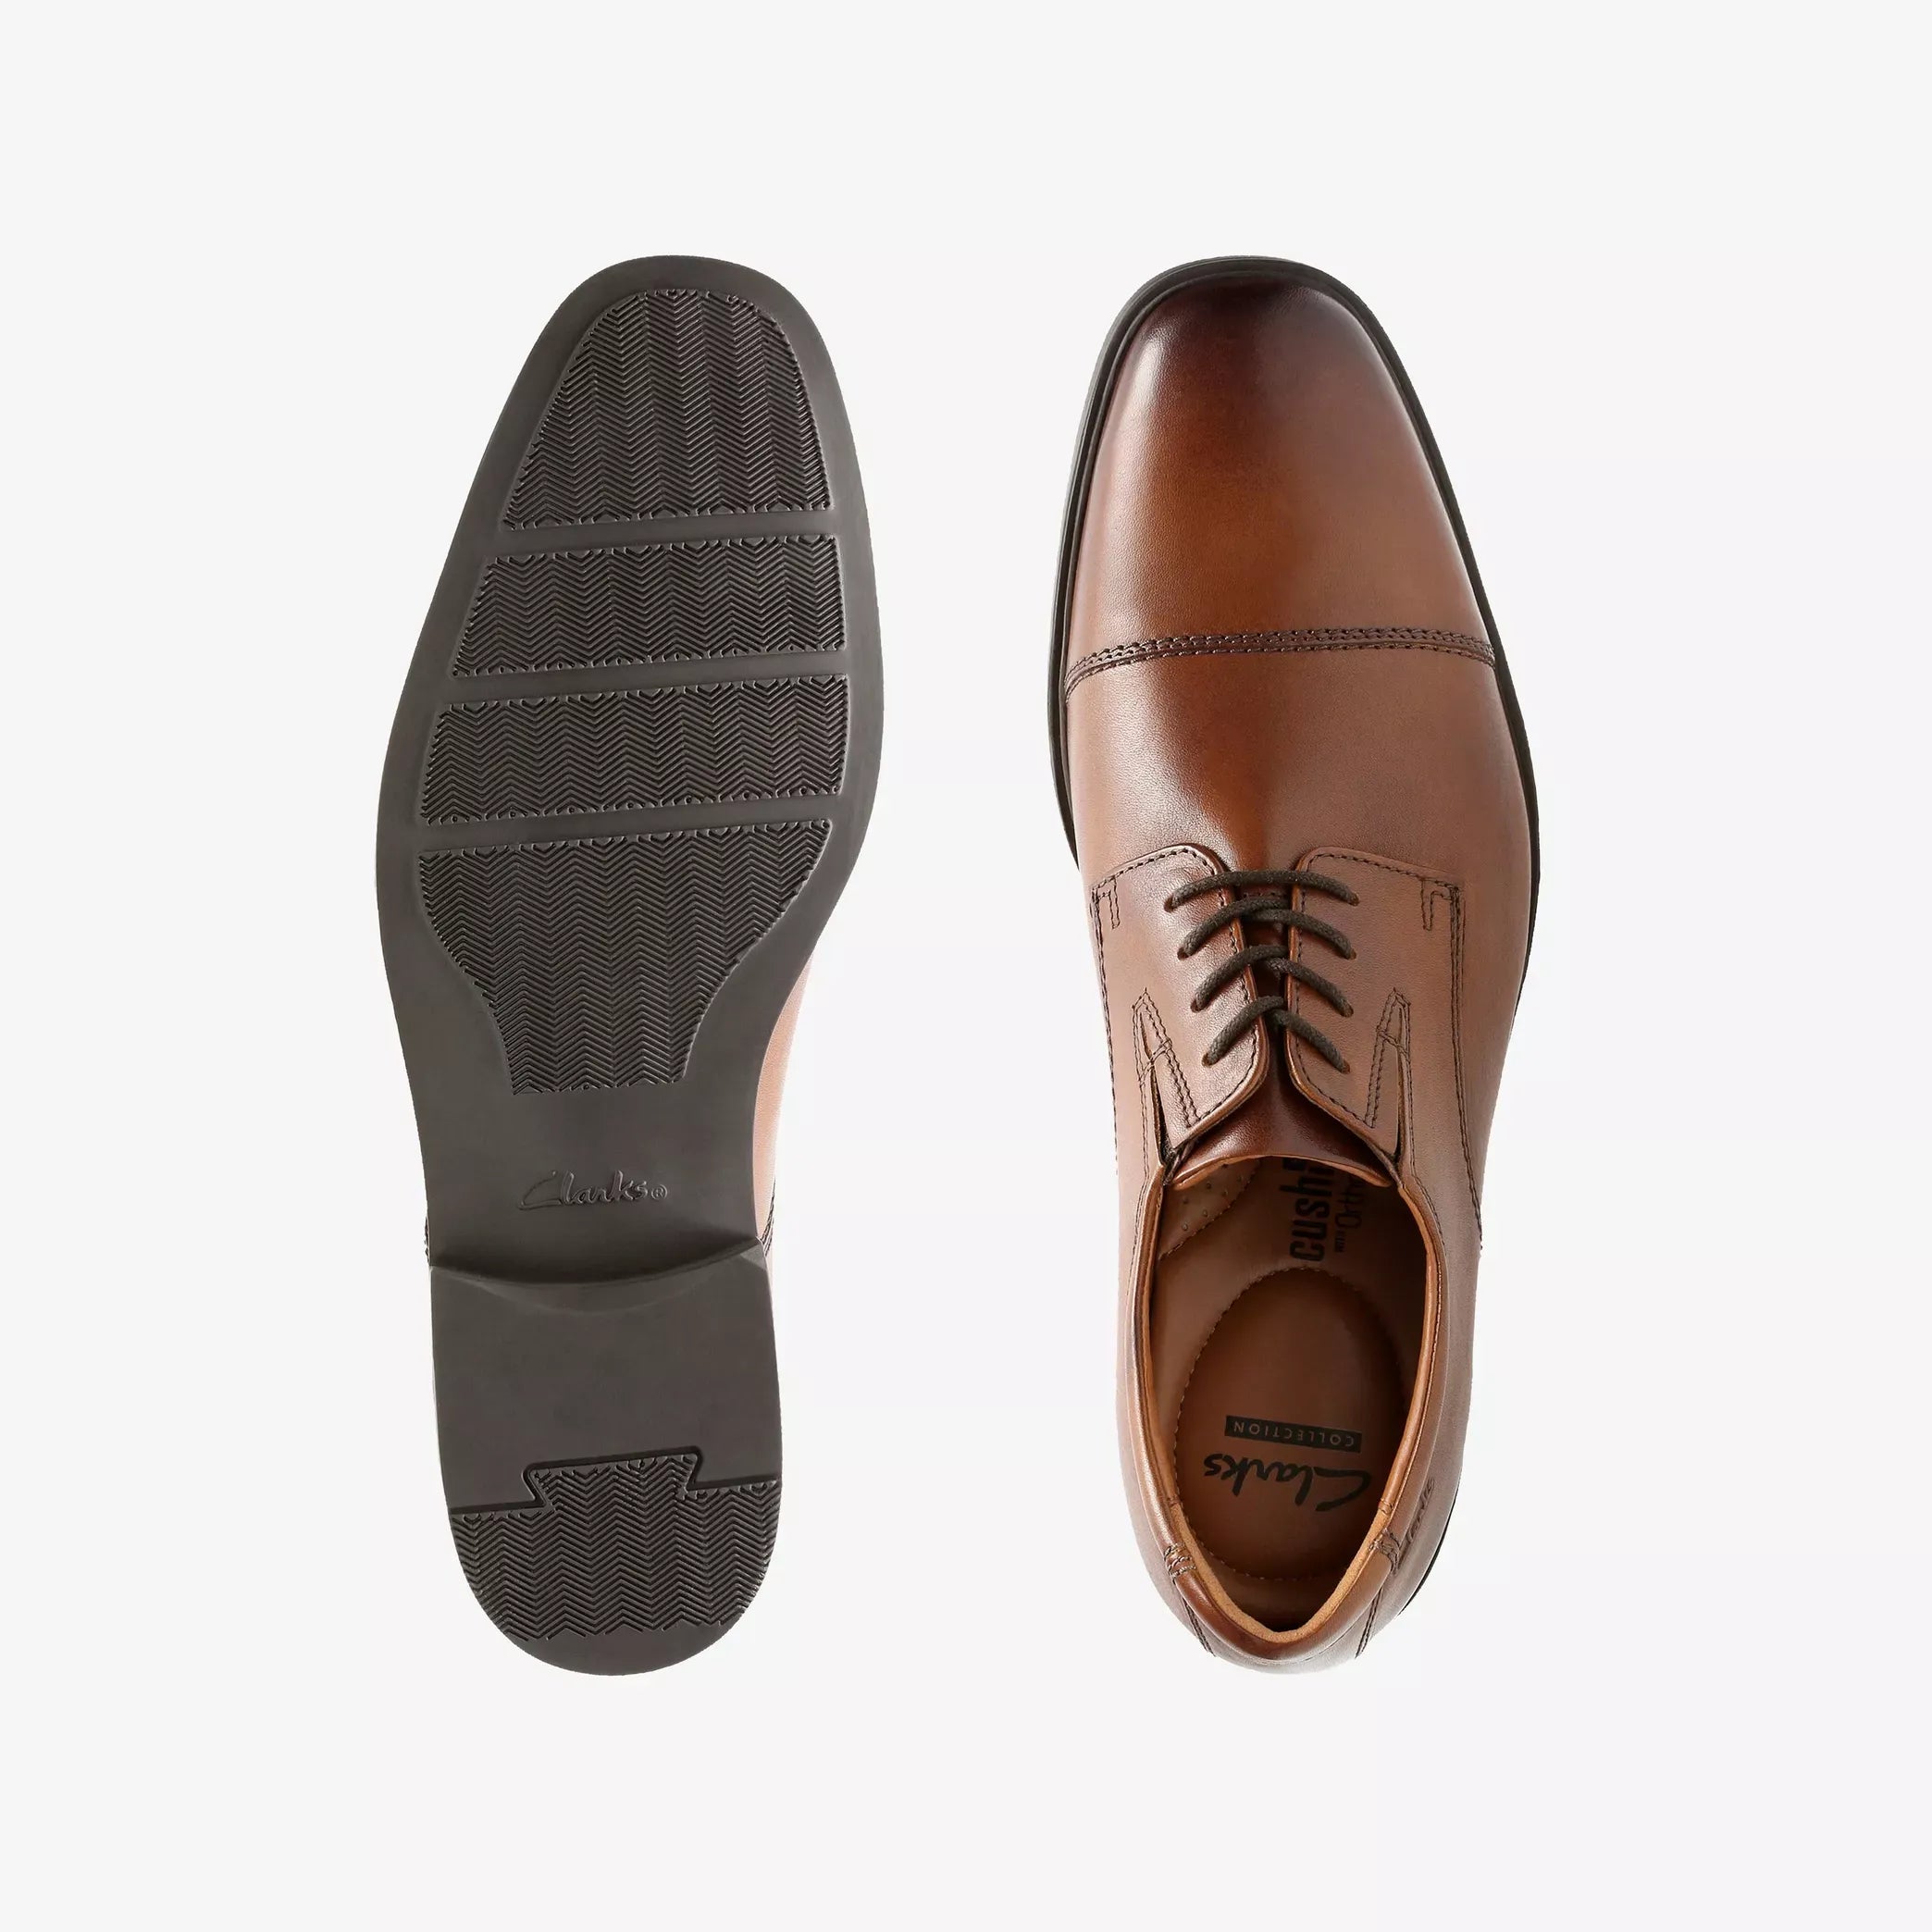 Clarks Men's Tilden Cap Oxford Brown Shoes